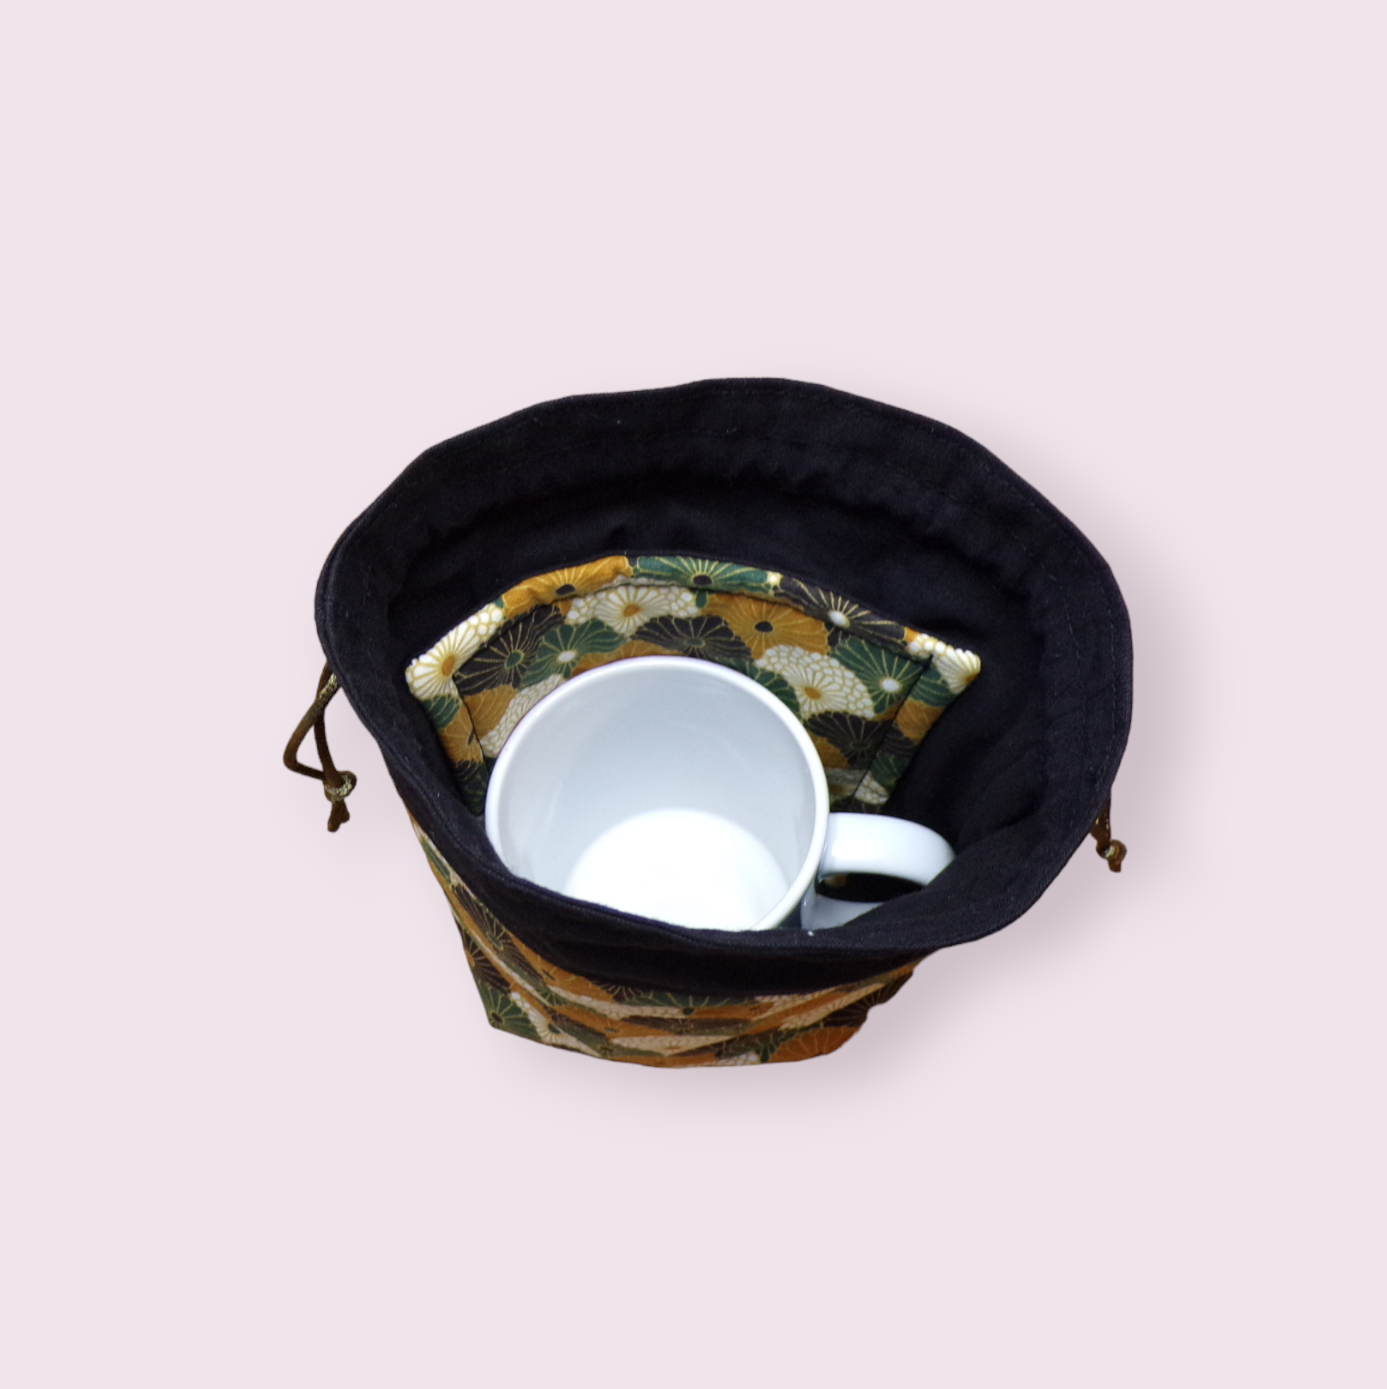 Pochette de transport pour mug et son sous mug, sac de rangement forme  pochon ouatiné. Modèle rosaces doublé noir *Livraison offerte* - Fait2mains